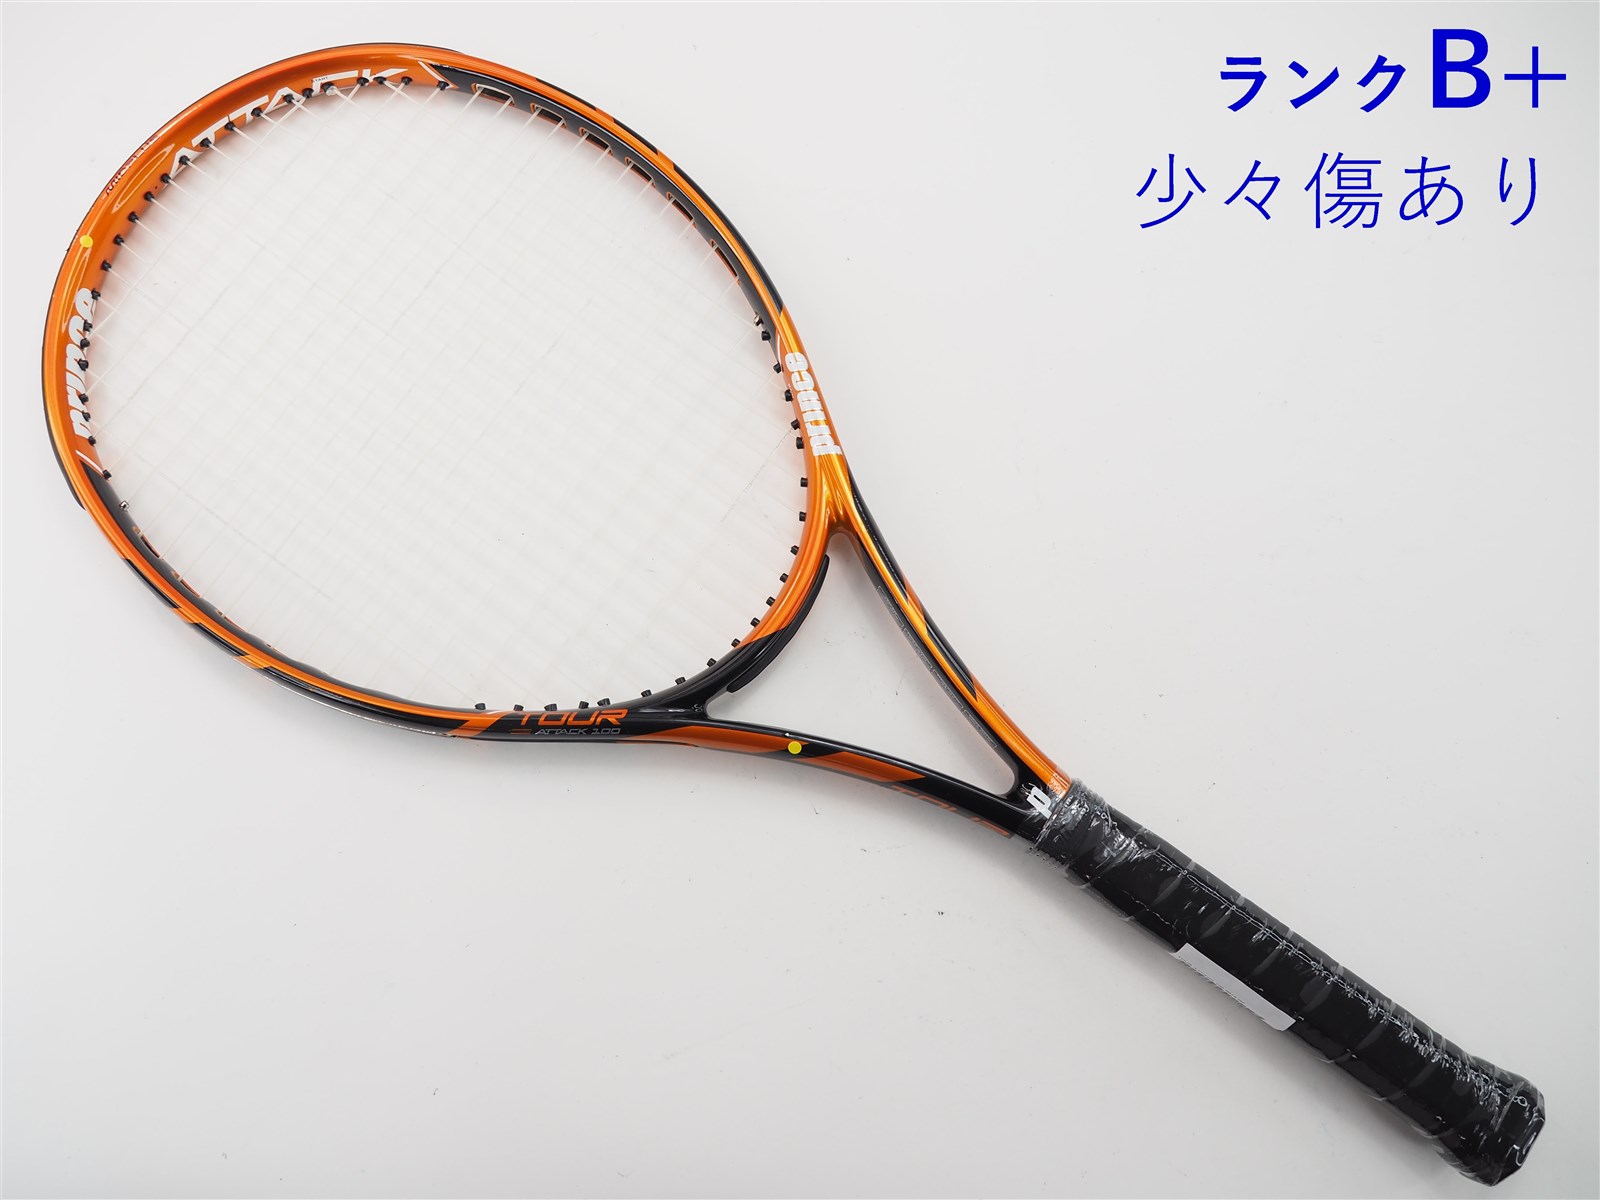 テニスラケット プリンス ツアー アタック 100 2014年モデル (G2